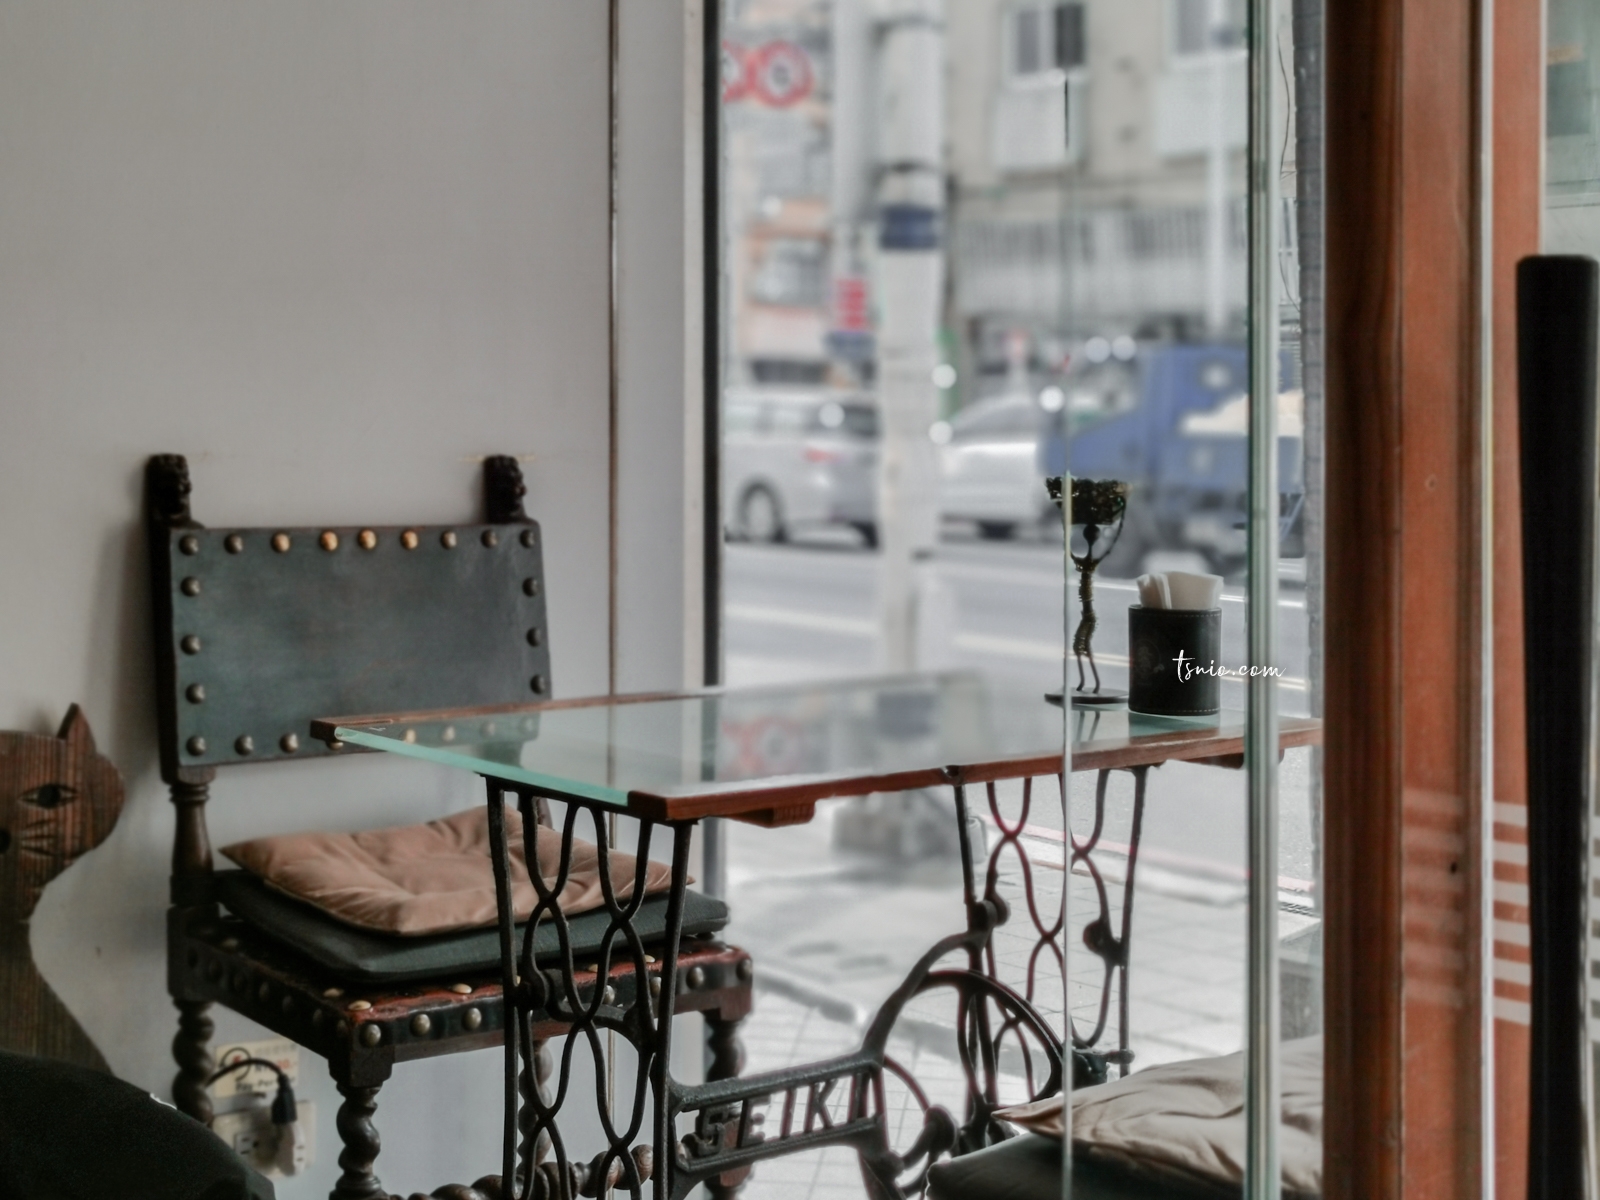 基隆委託行街區 懷舊時光中的一縷朝氣 委託行美食咖啡廳酒吧推薦